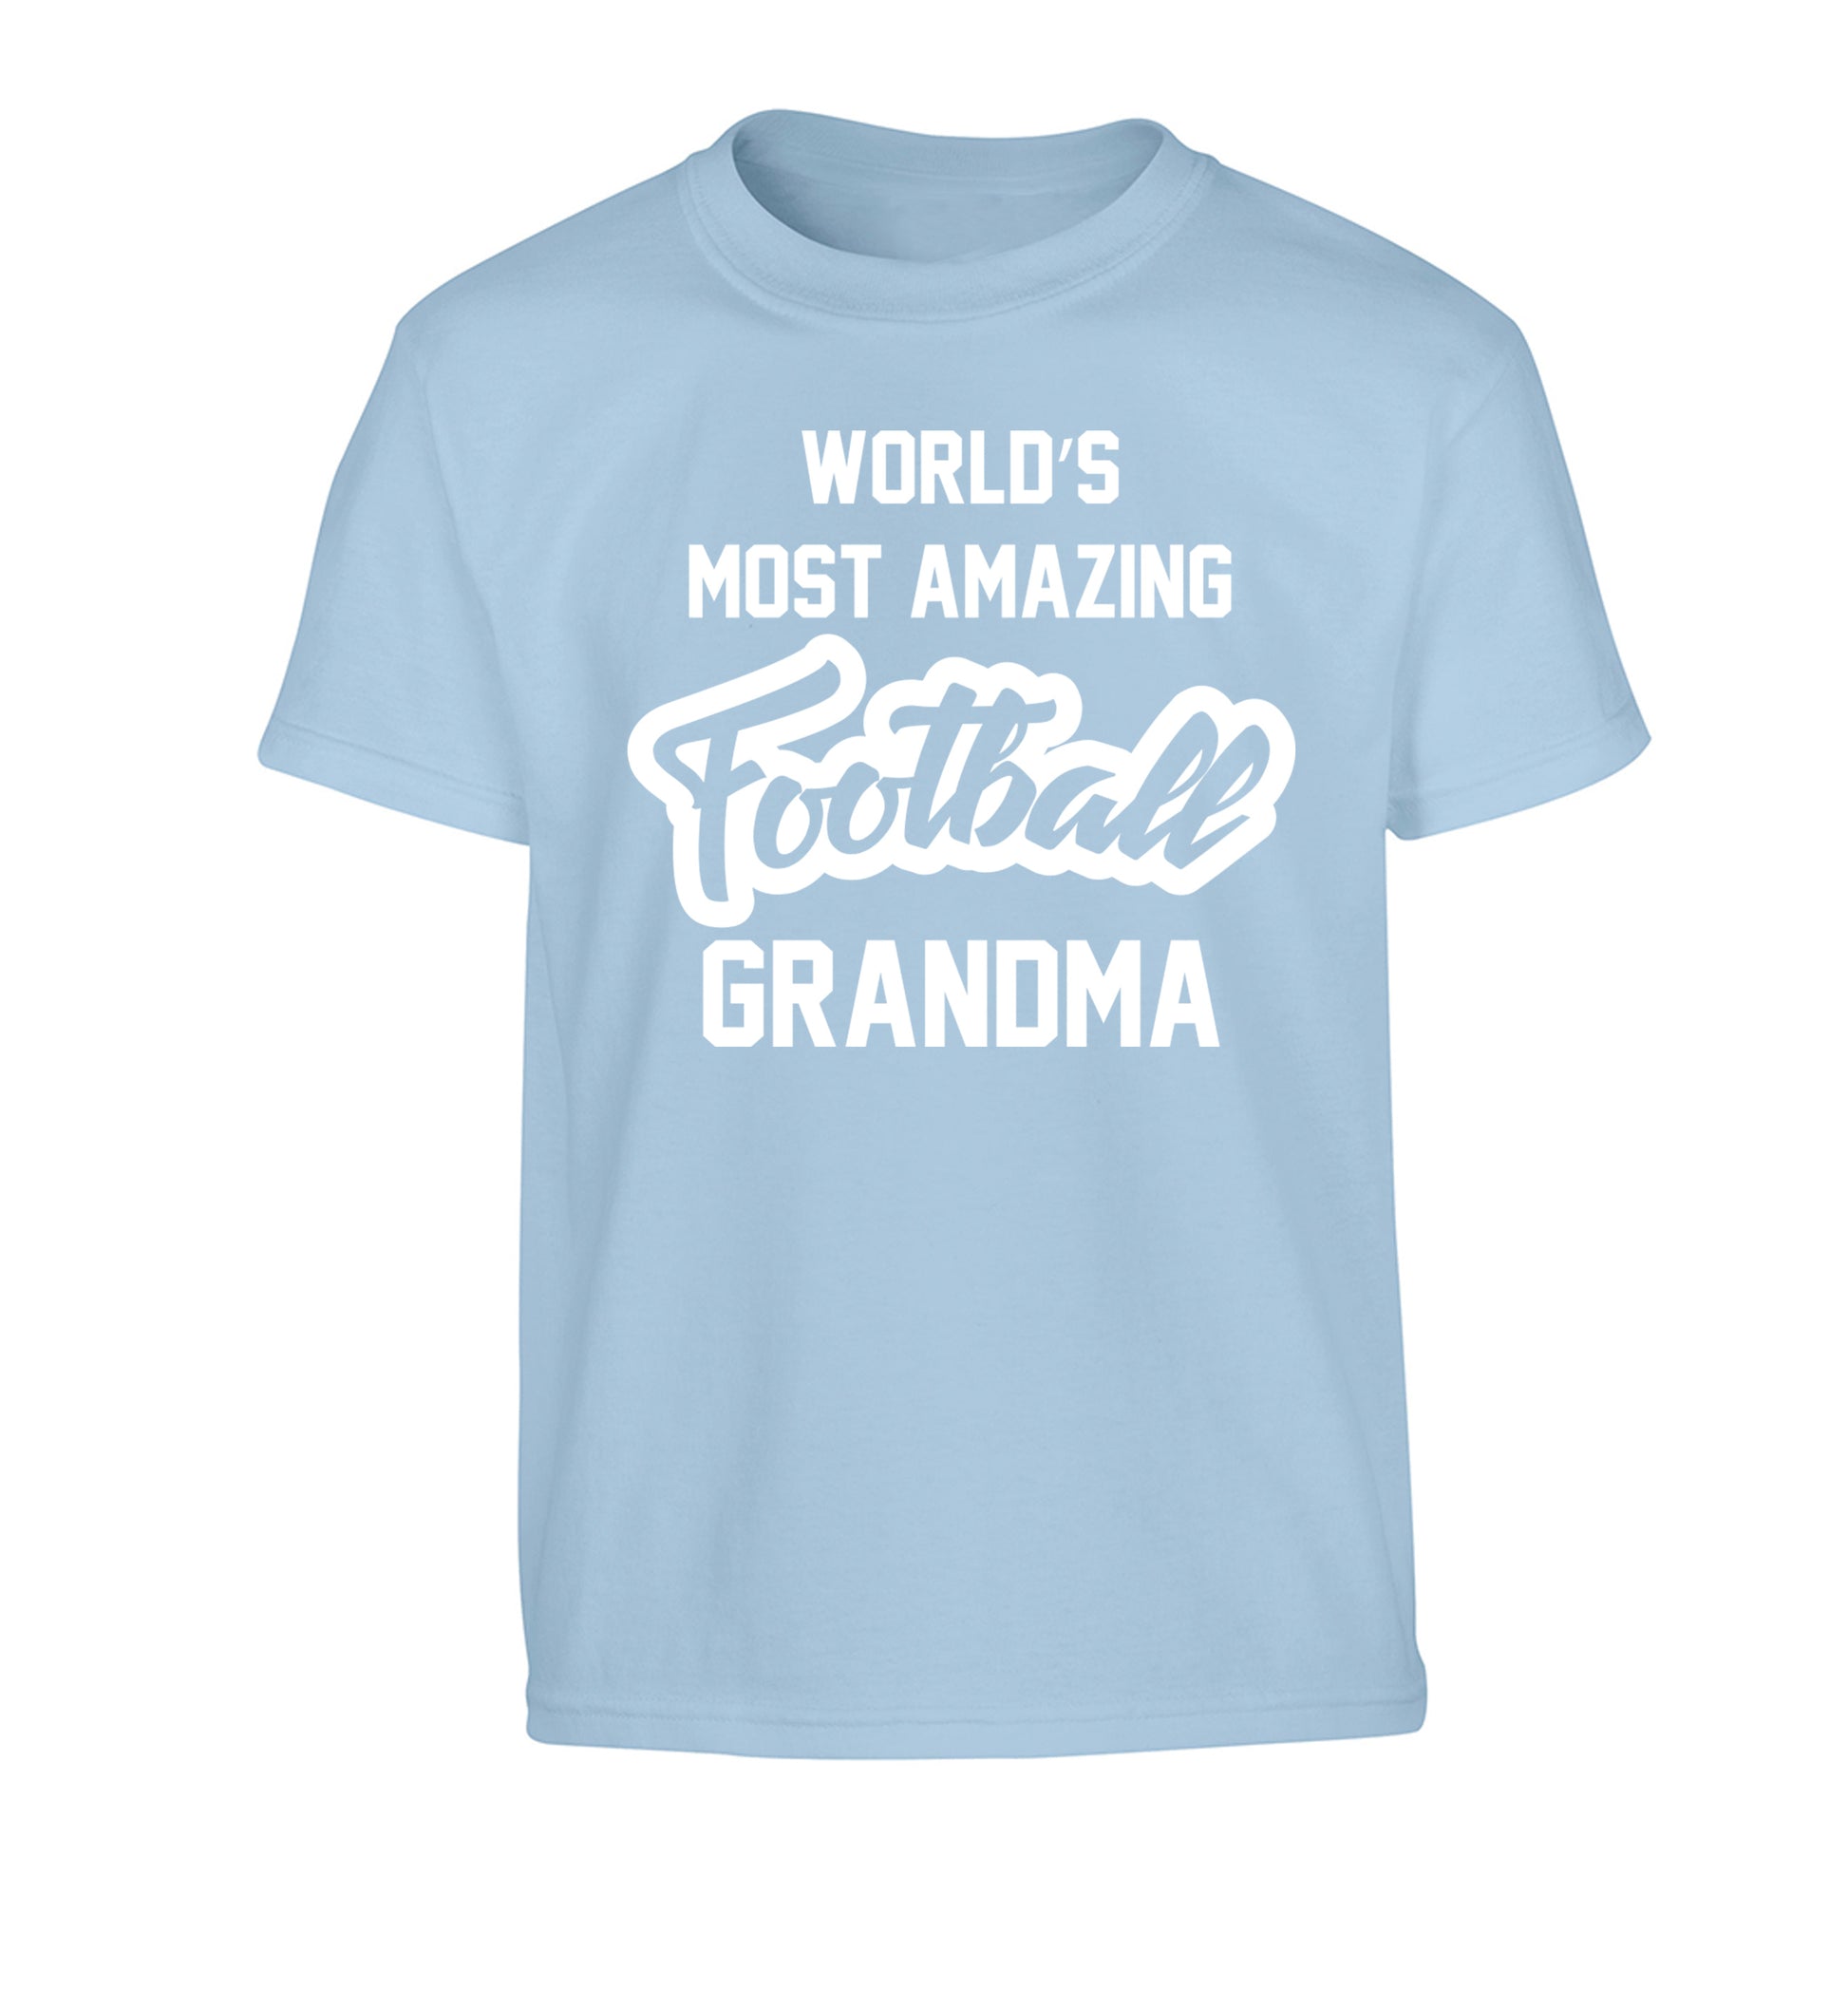 Worlds most amazing football grandma Children's light blue Tshirt 12-14 Years